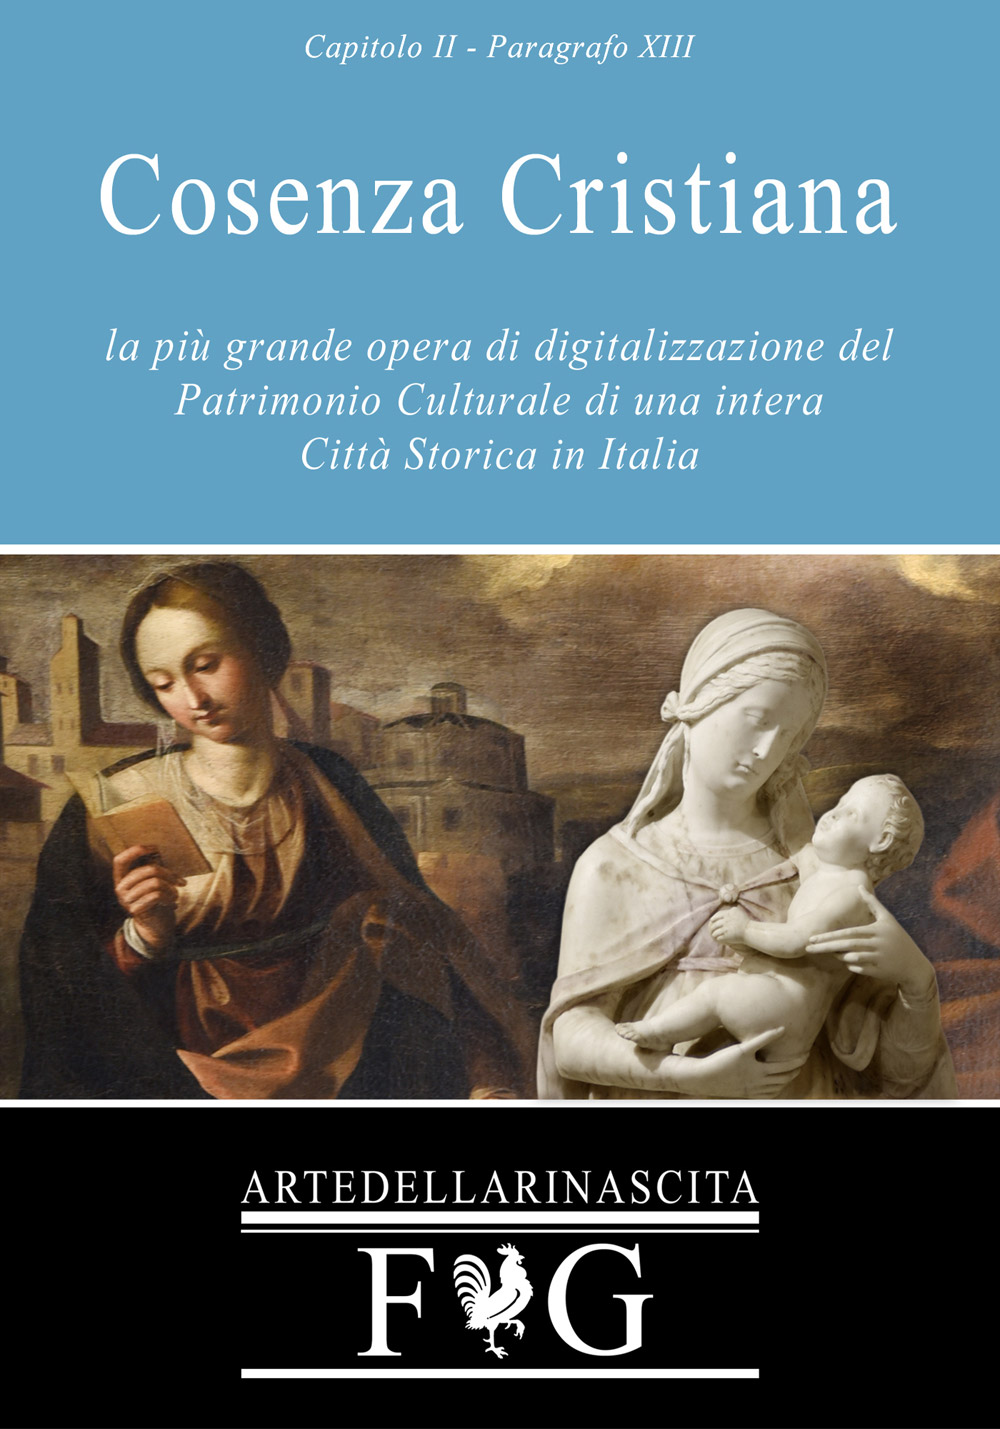 Fabio Gallo - Cosenza Cristiana - Eleonora Cafiero - Fondazione Paolo di Tarso - Beni Culturali